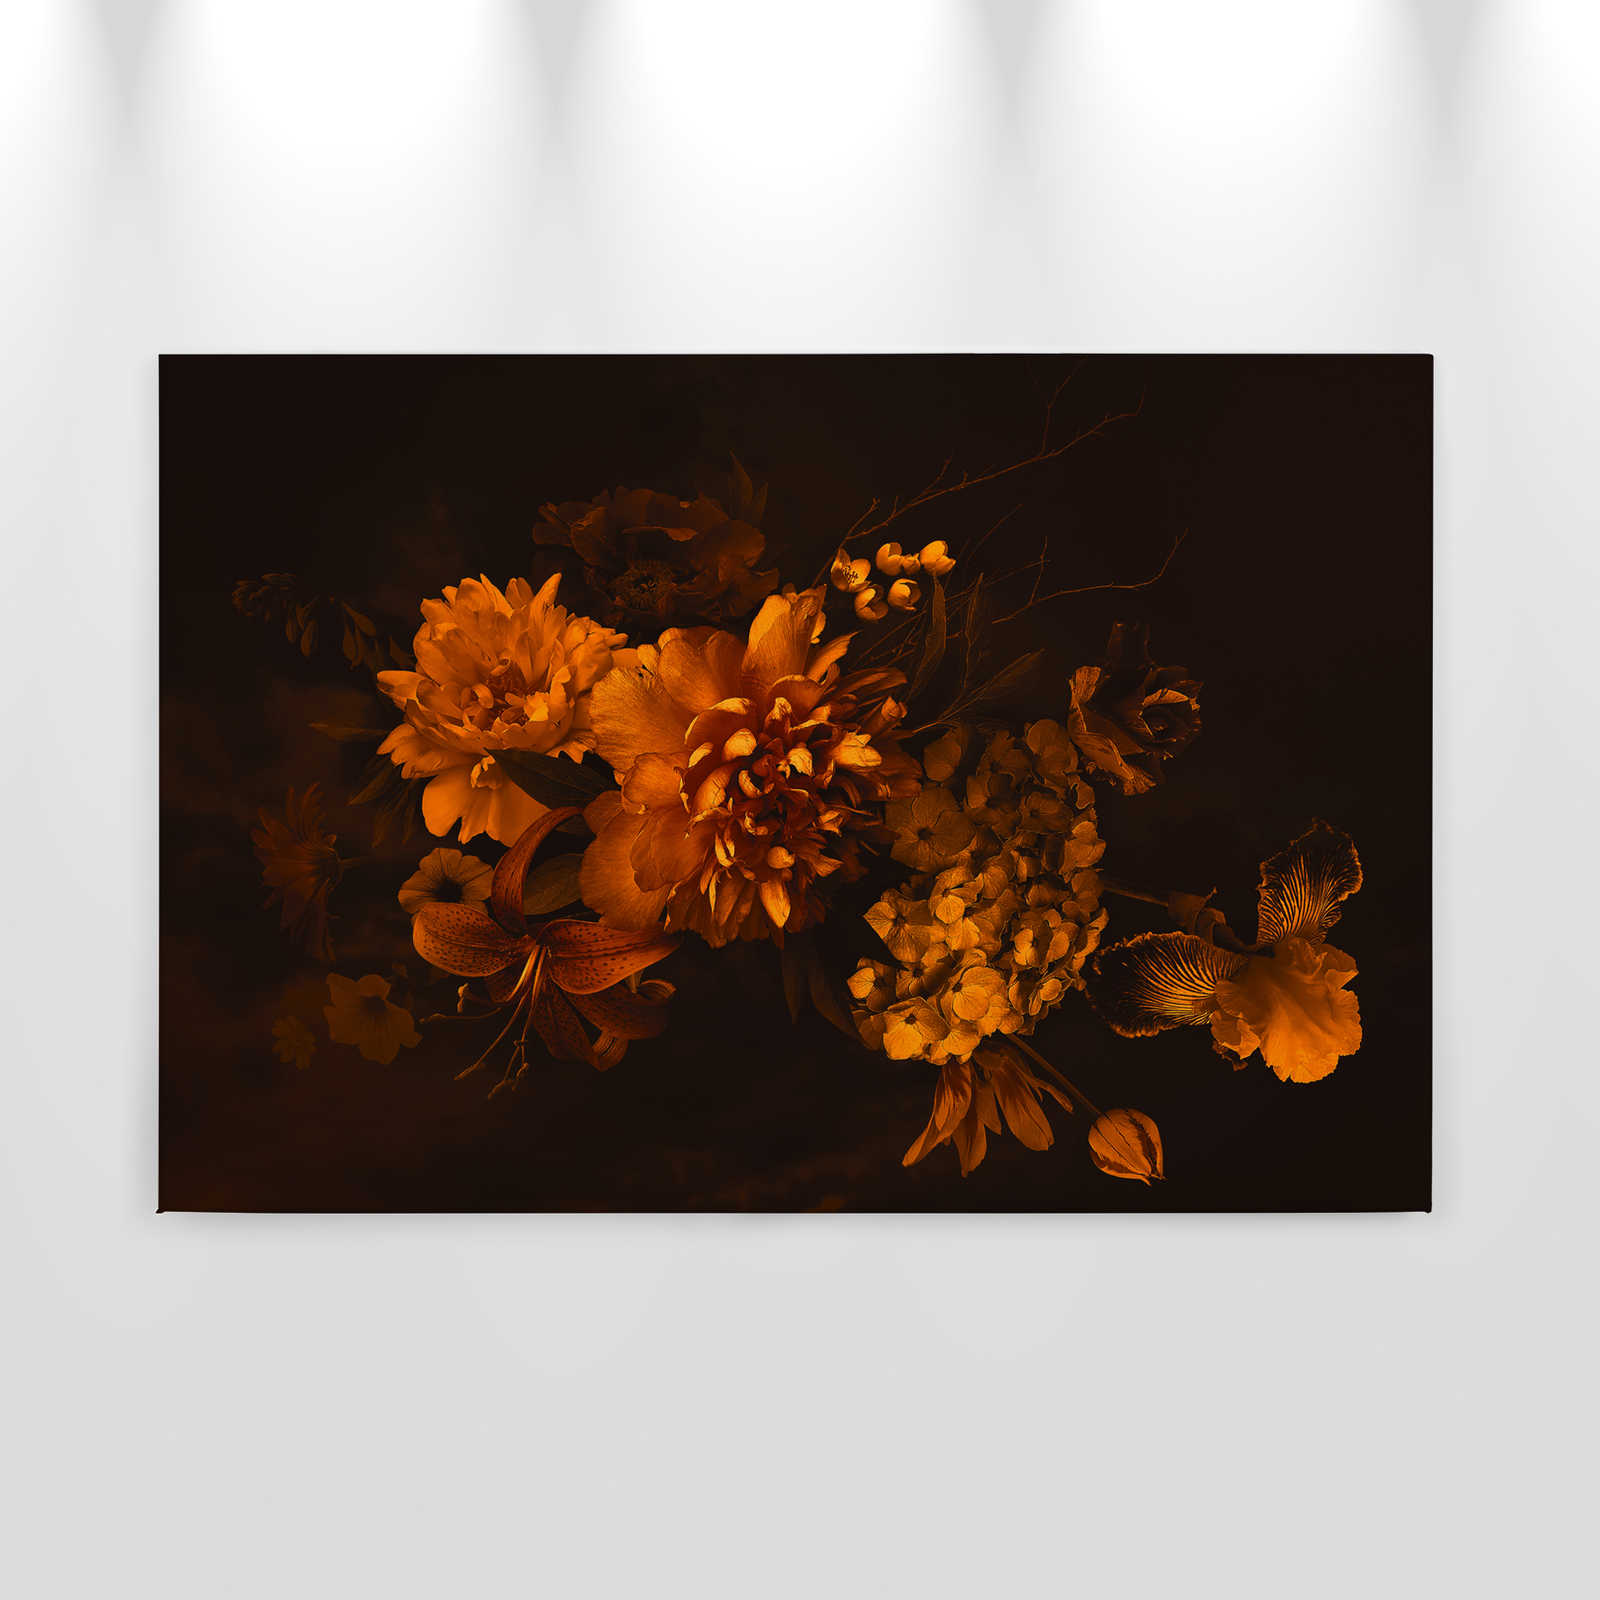             Leinwand mit Botanical-Style Blumenstrauß | orange schwarz – 0,90 m x 0,60 m
        